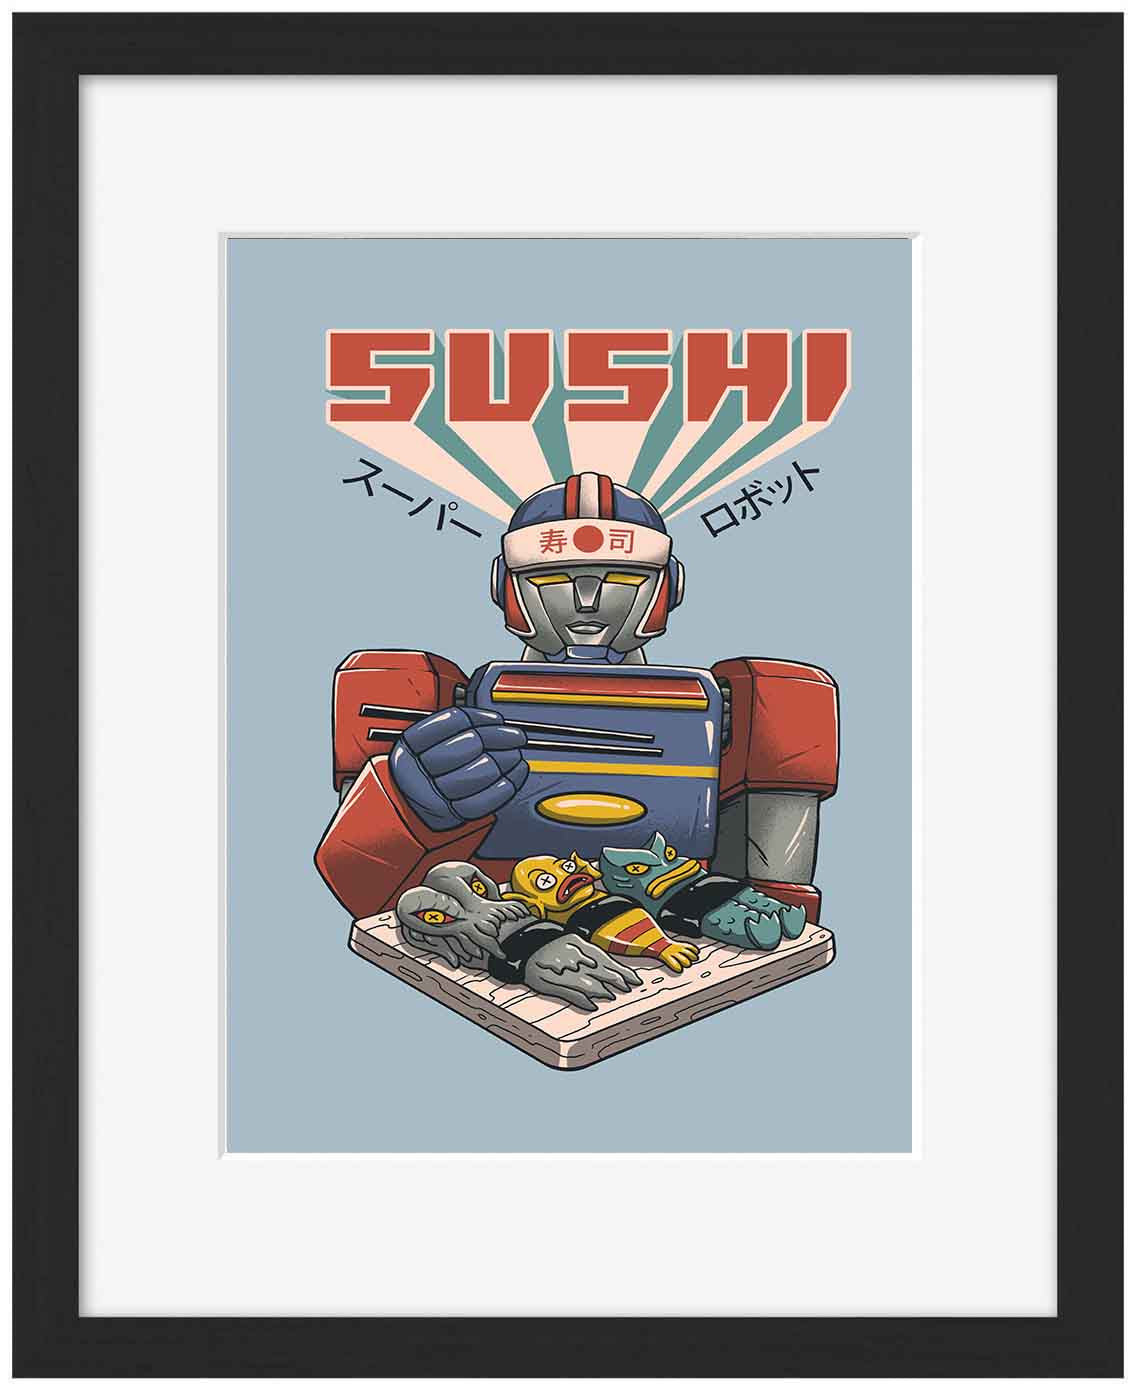 Super Sushi Robot-print, vincent-trinidad-Framed Print-30 x 40 cm-BLUE SHAKER